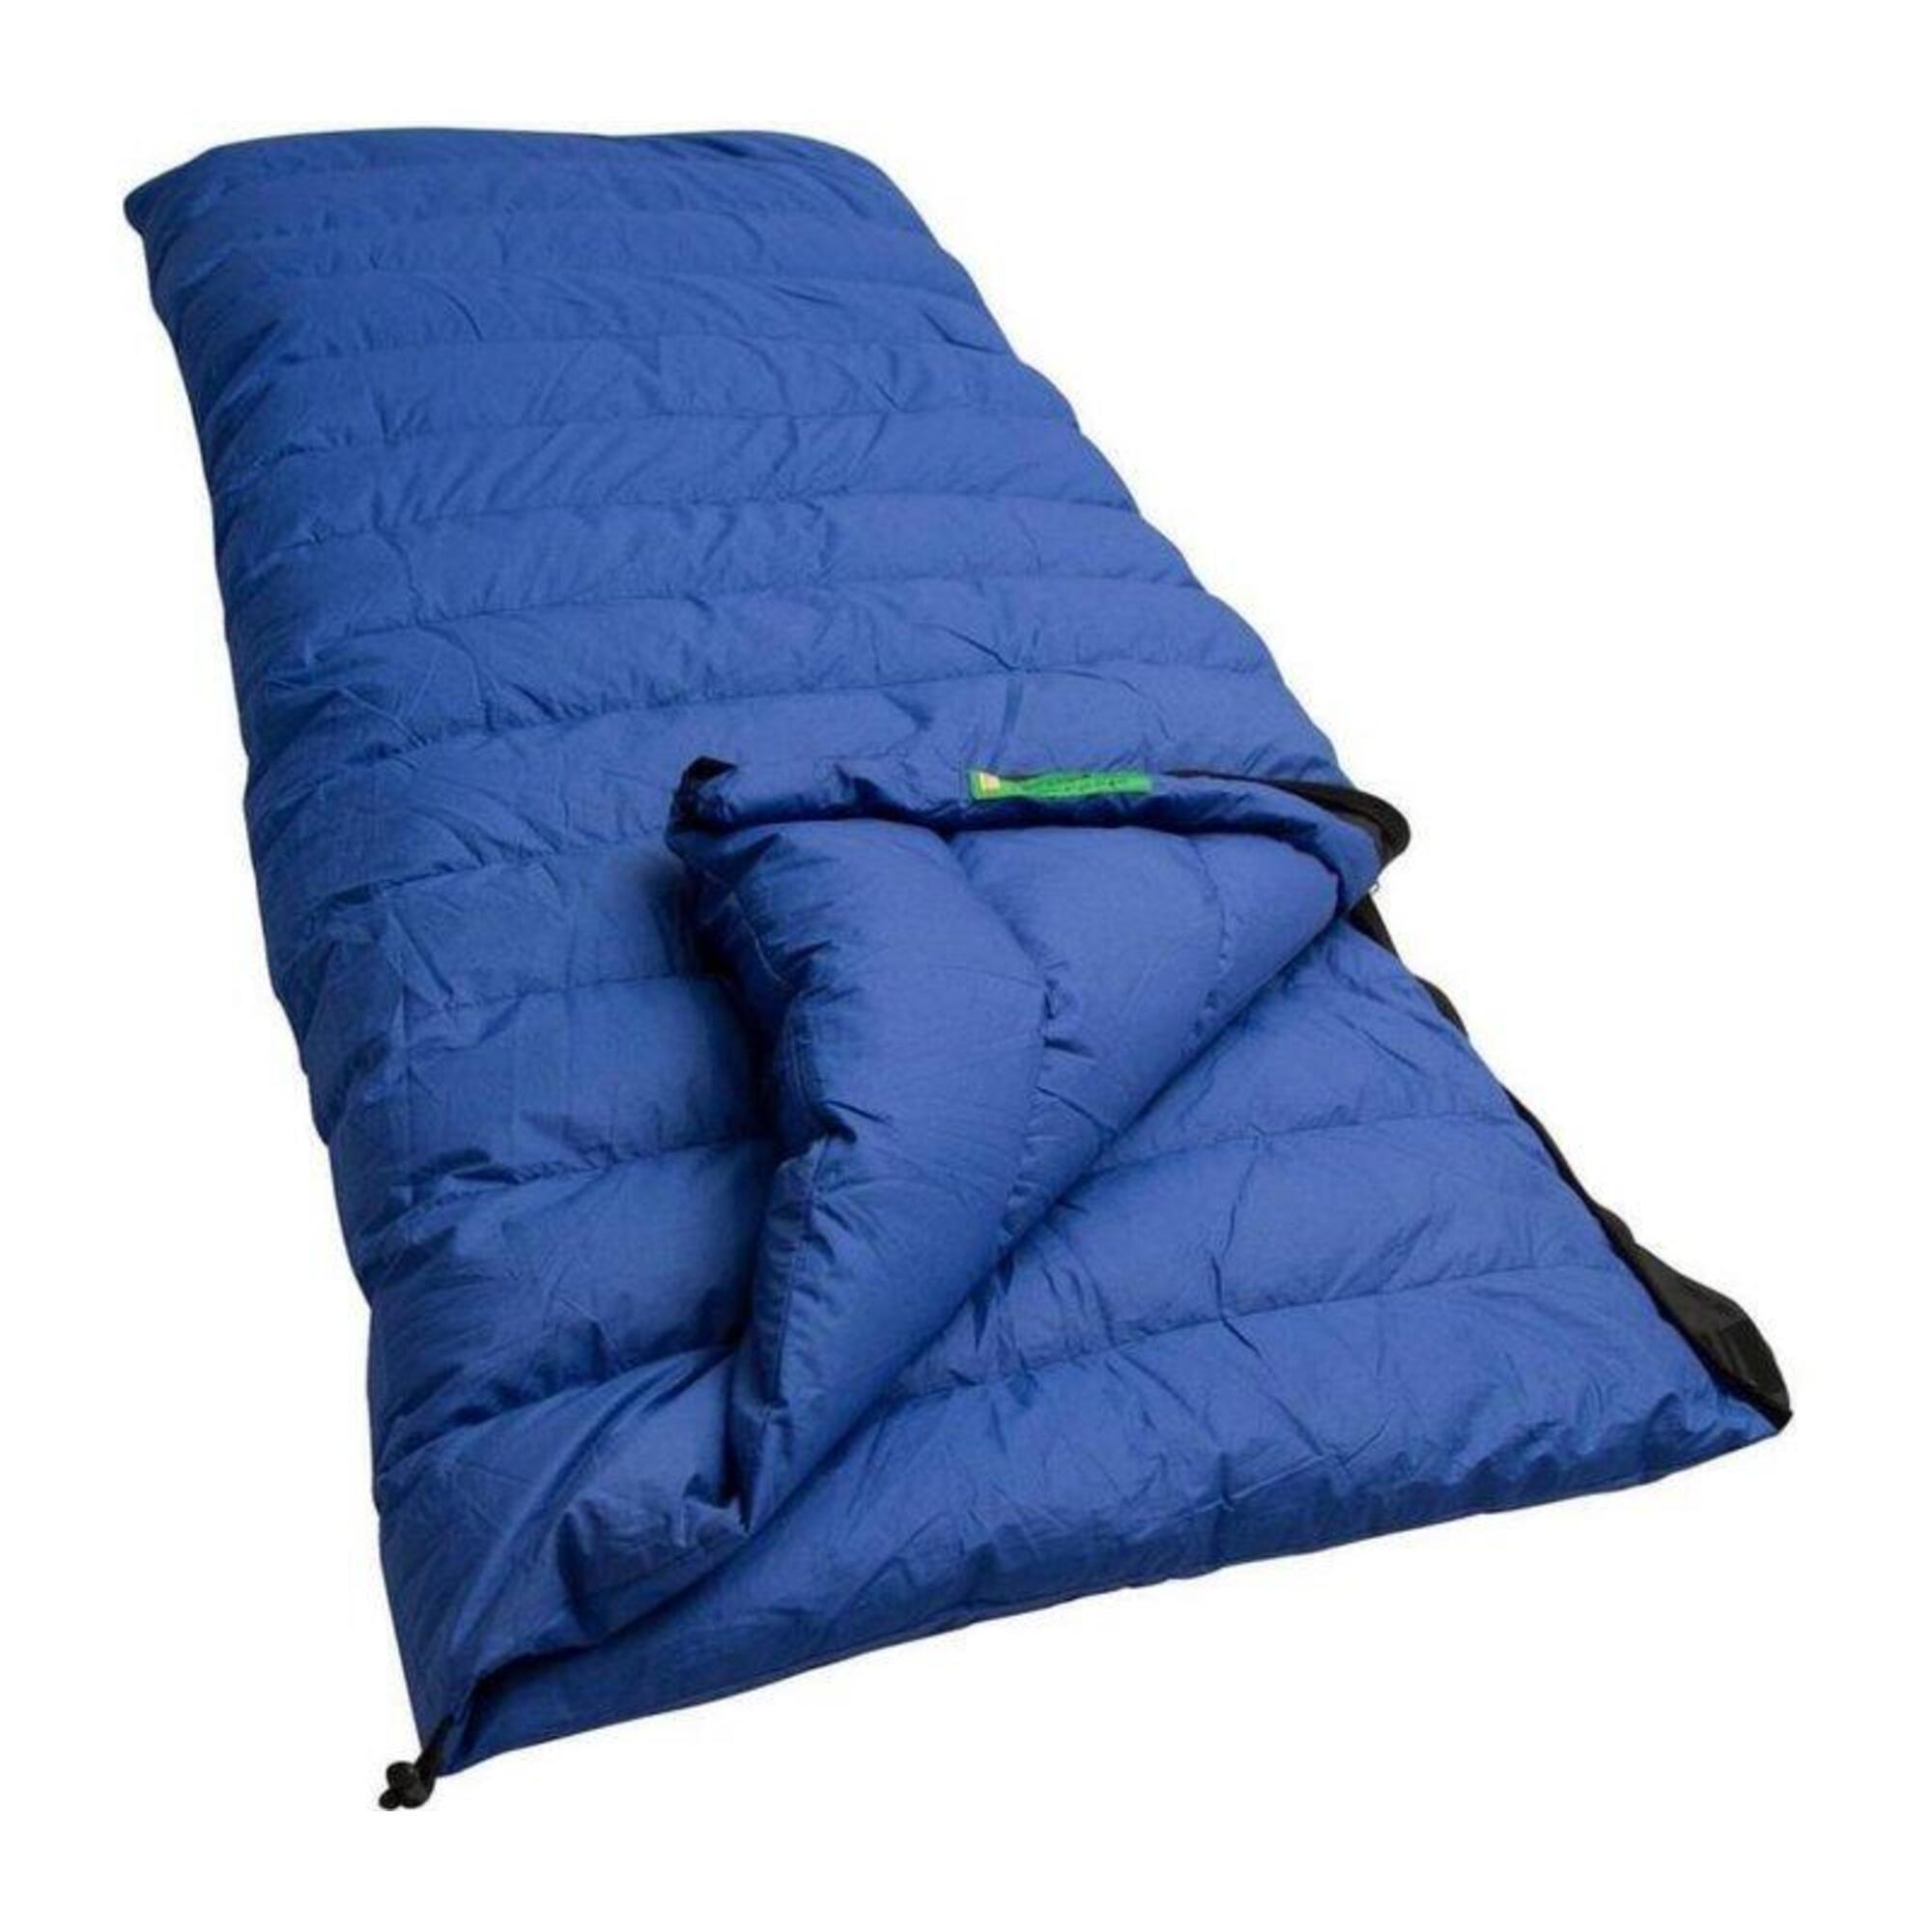 Спальный мешок Lowland Companion CC 1 с пуховым одеялом, синий mini 0с 210х85 спальный мешок правый синий